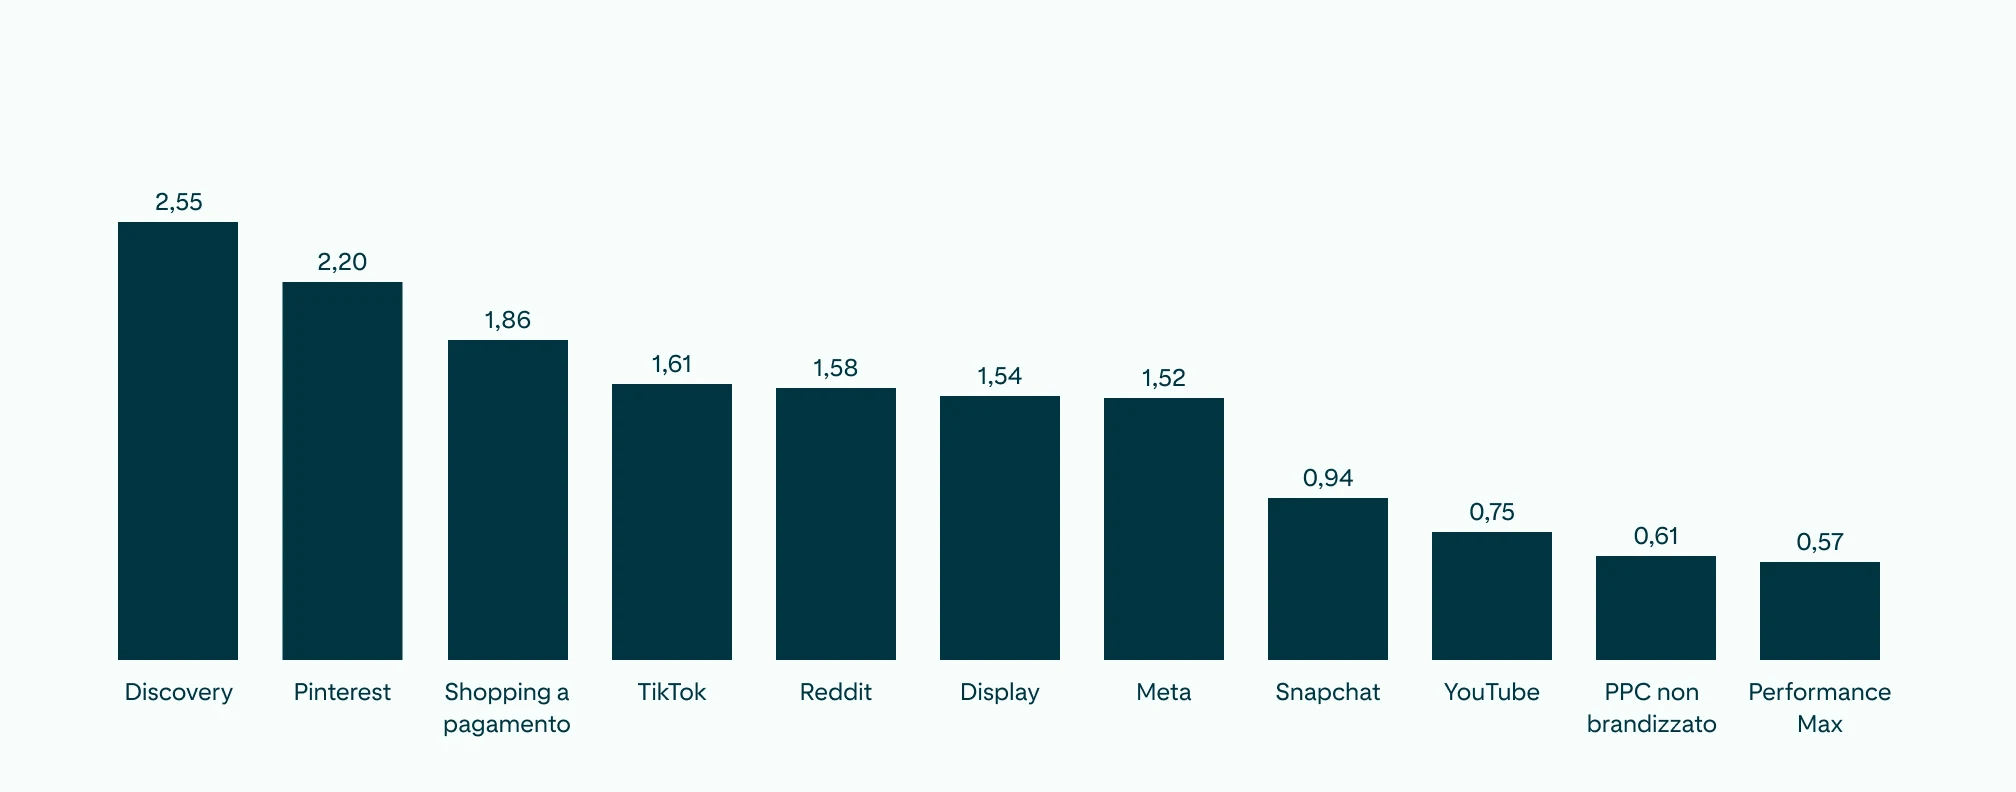    Grafico a barre che mostra il R O A S di tutti i canali social media, con Pinterest che si distingue dagli altri posizionandosi subito dopo Discovery.